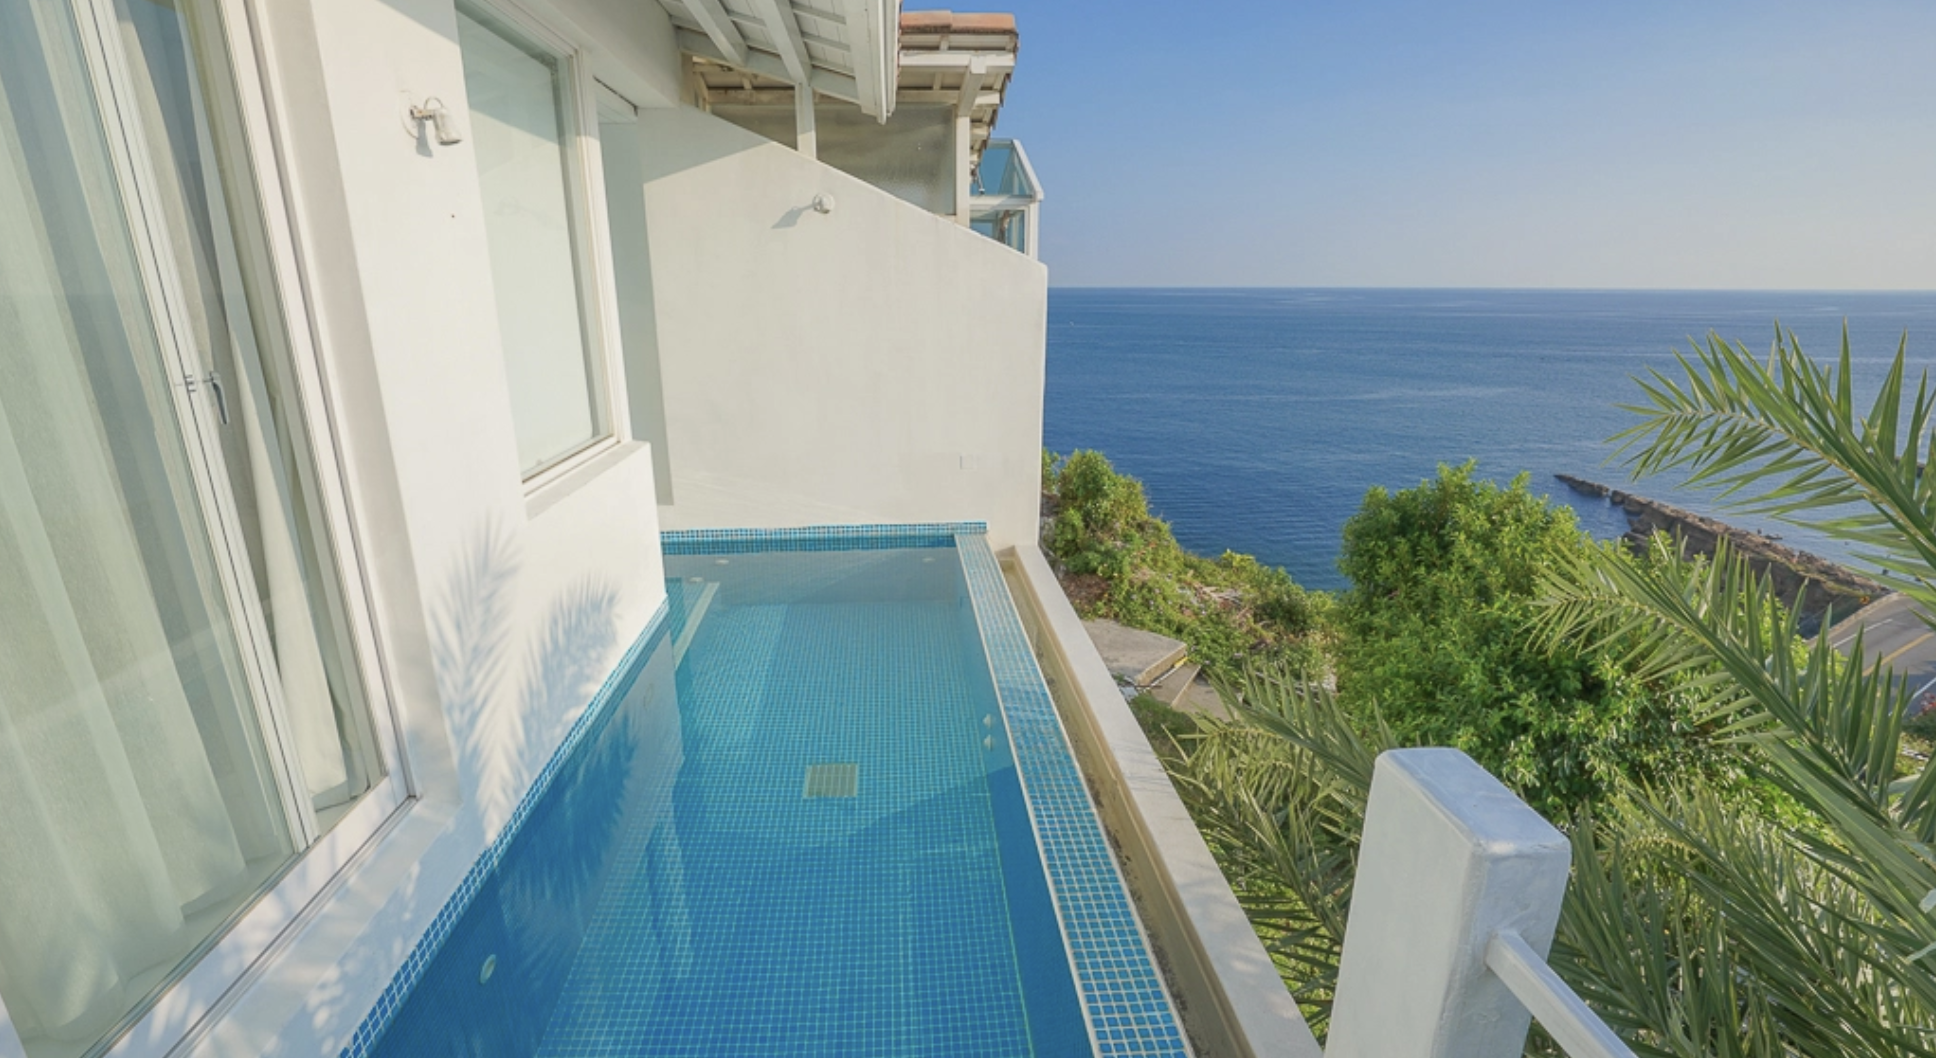 延伸閱讀：北海岸海景住宿「Greek Villa 小希臘民宿」每間房都有海景泳池、下午茶和早餐